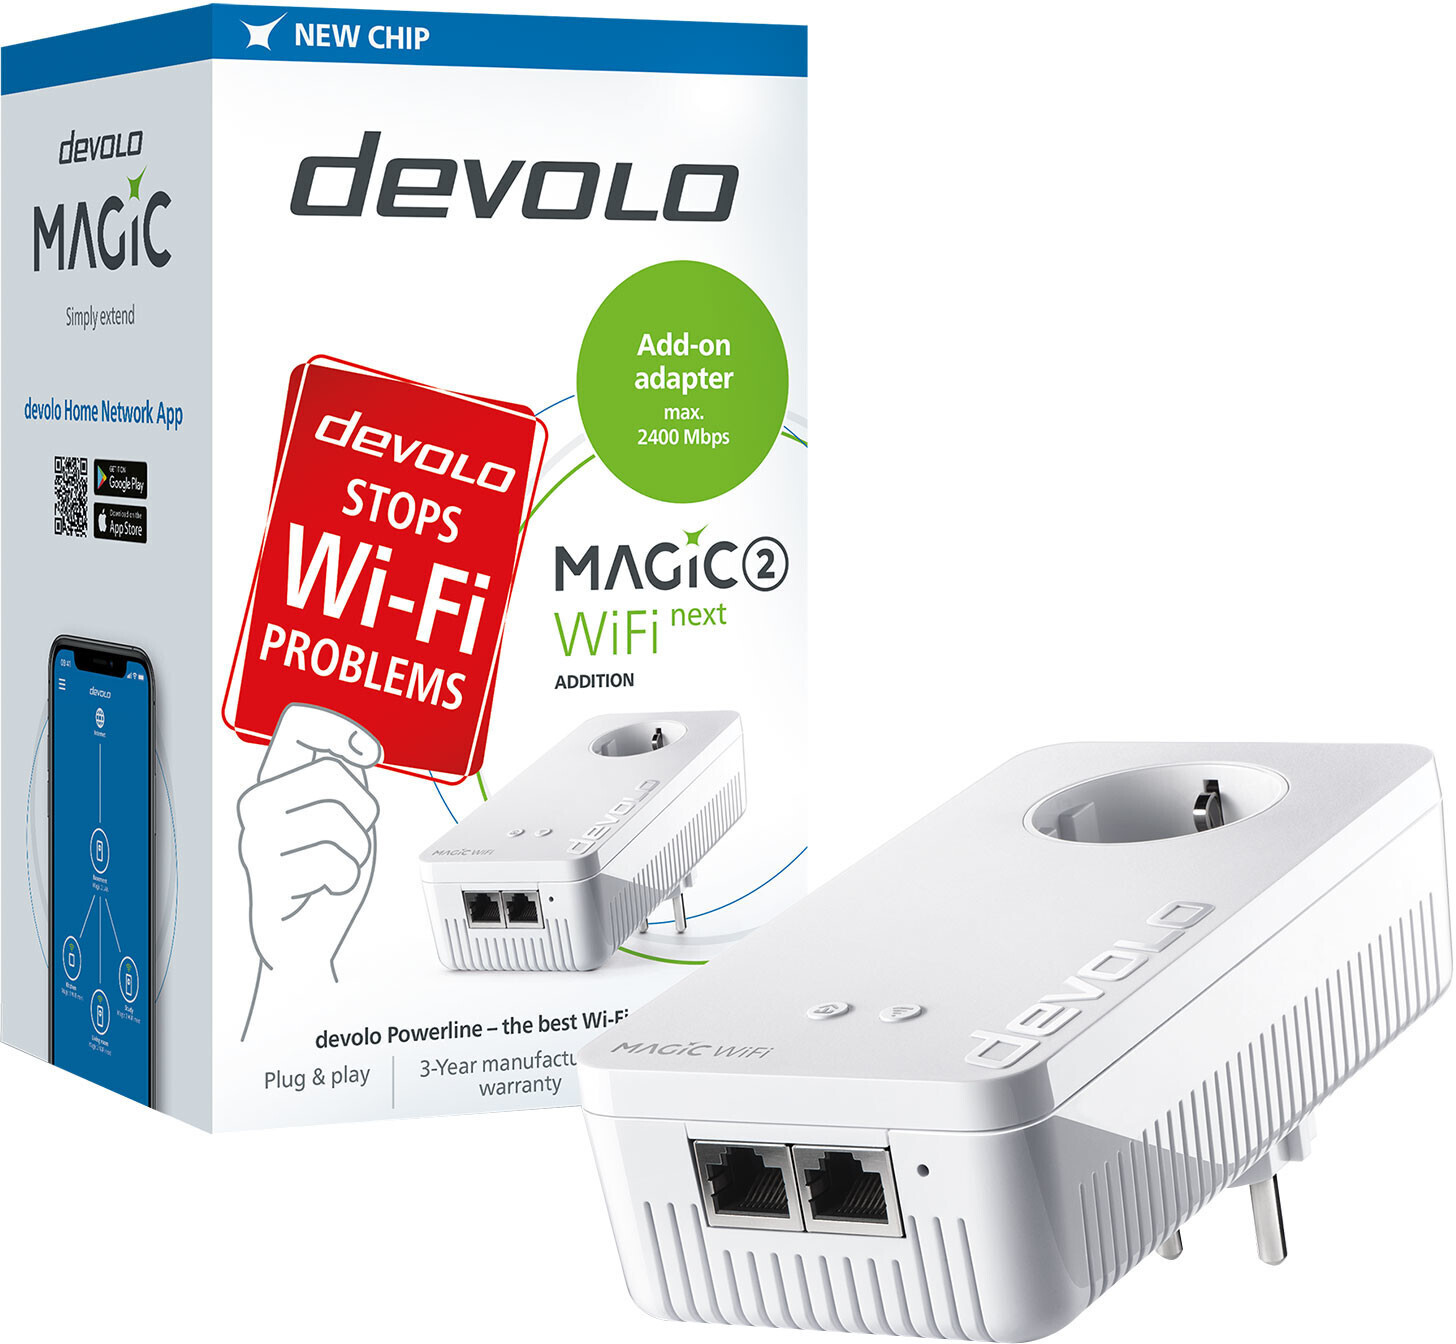 Review: devolo Magic 2 WiFi next